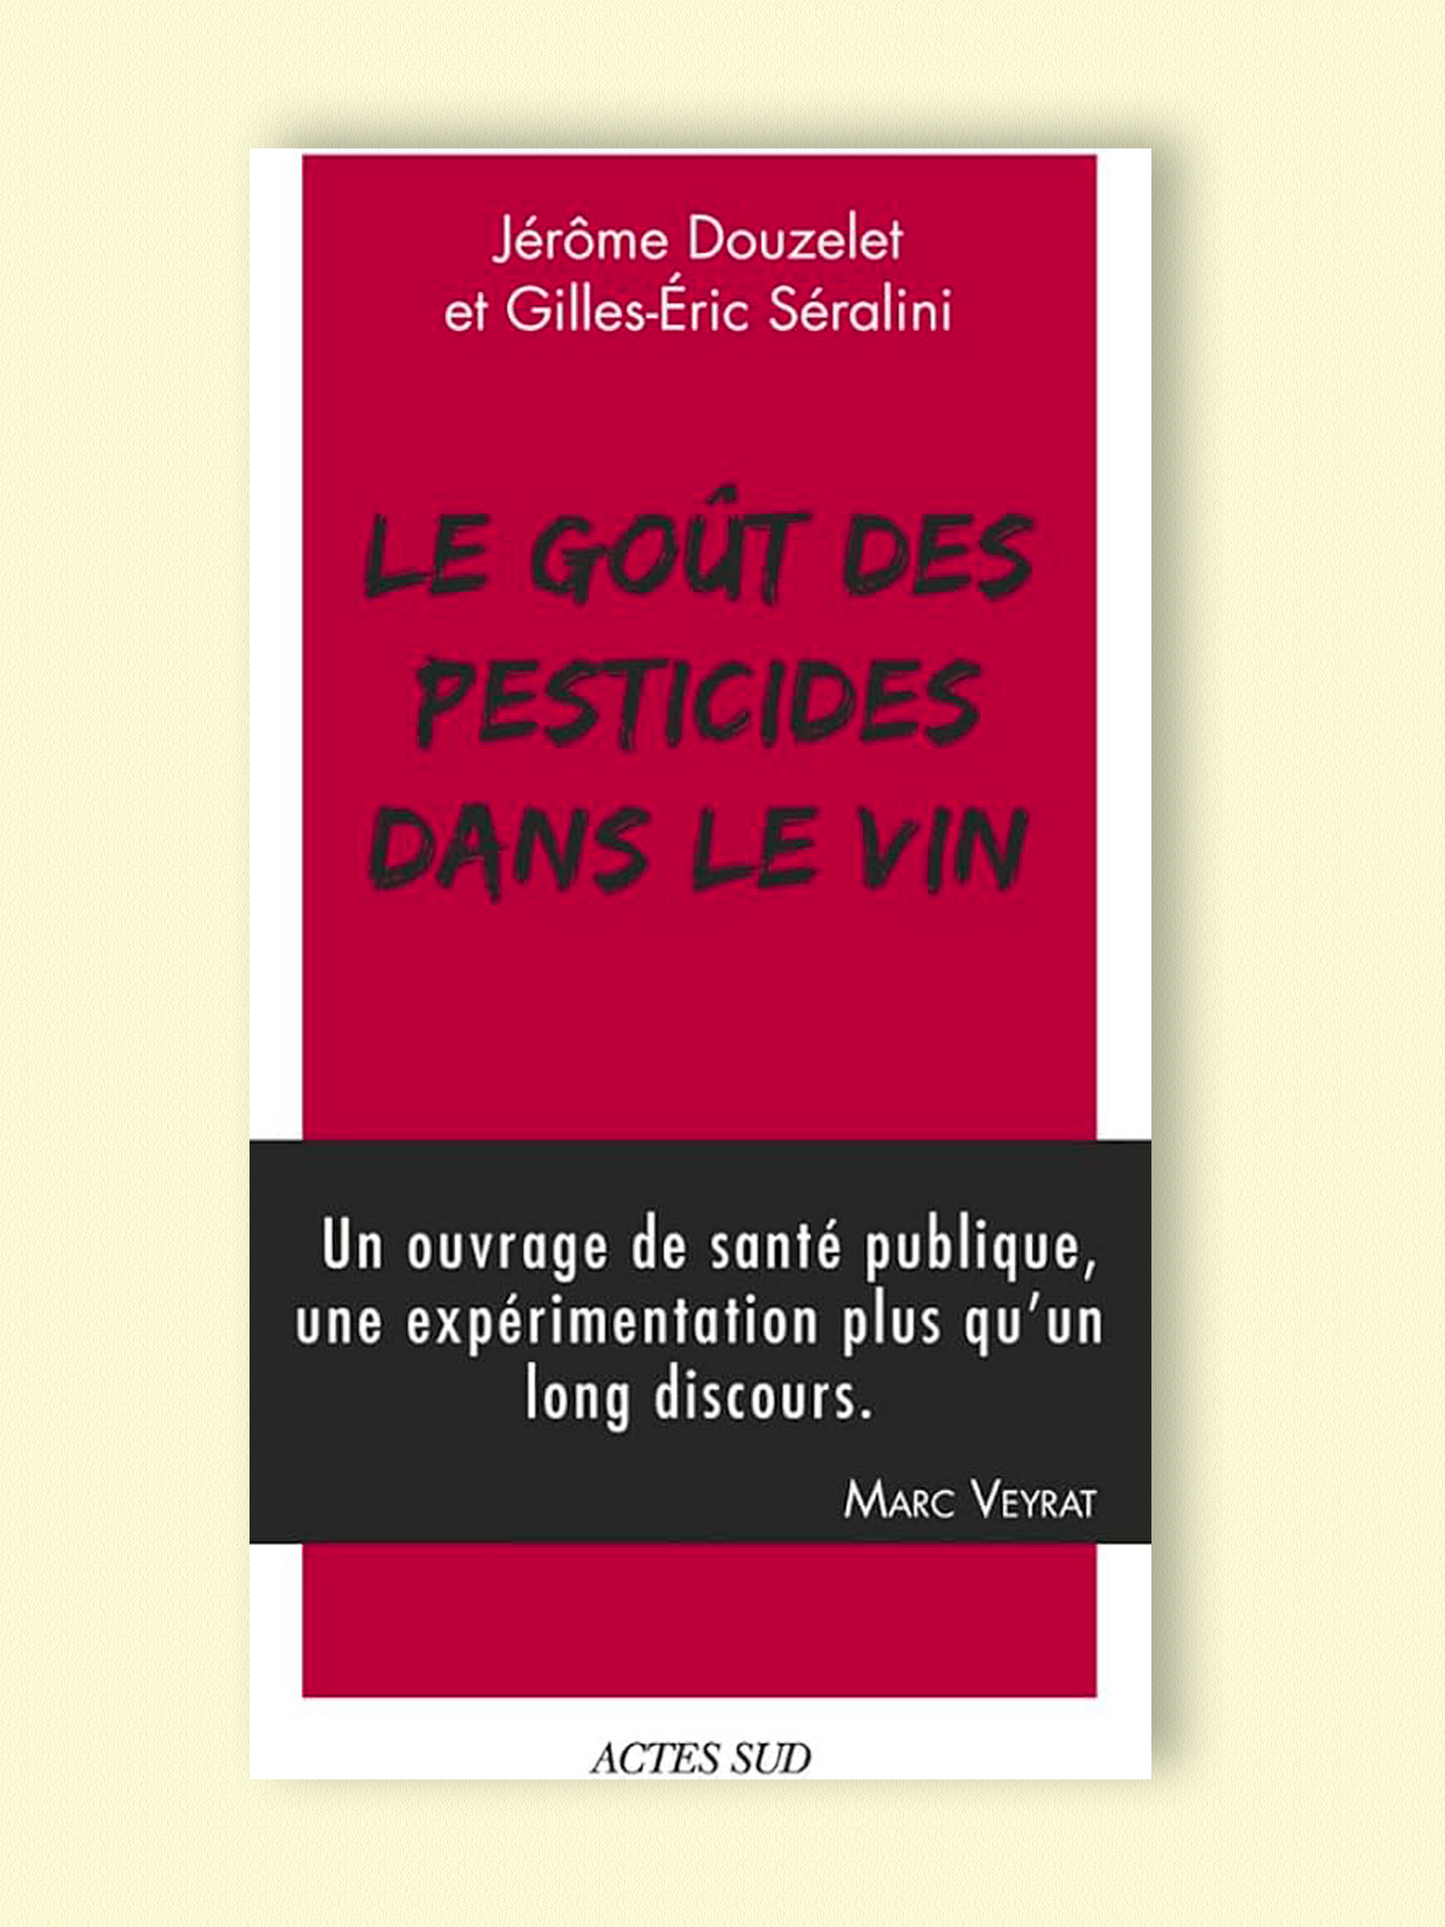 Le goût des pesticides dans le vin |  Jerôme Douzelet et Gilles-Eric Séralini